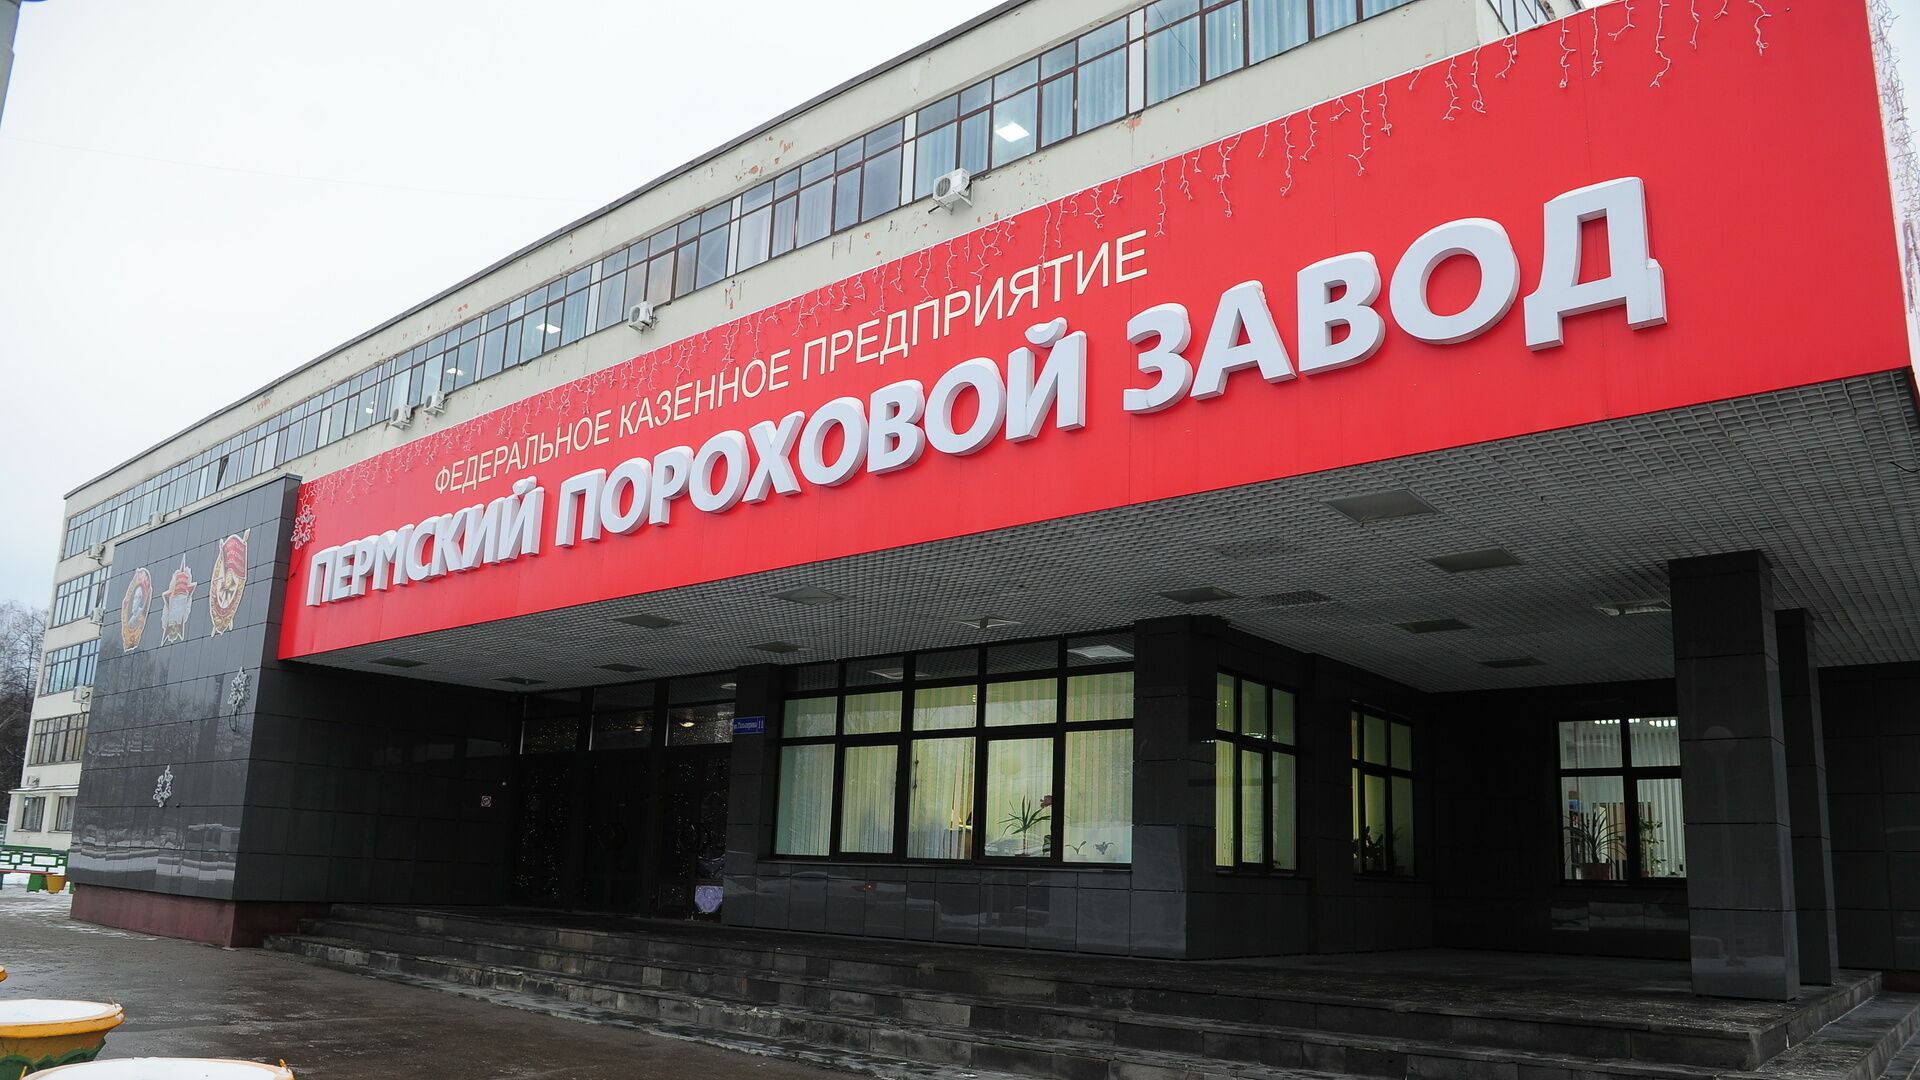 Пермский пороховой завод не смог обжаловать штраф за нарушения пожарной безопасности